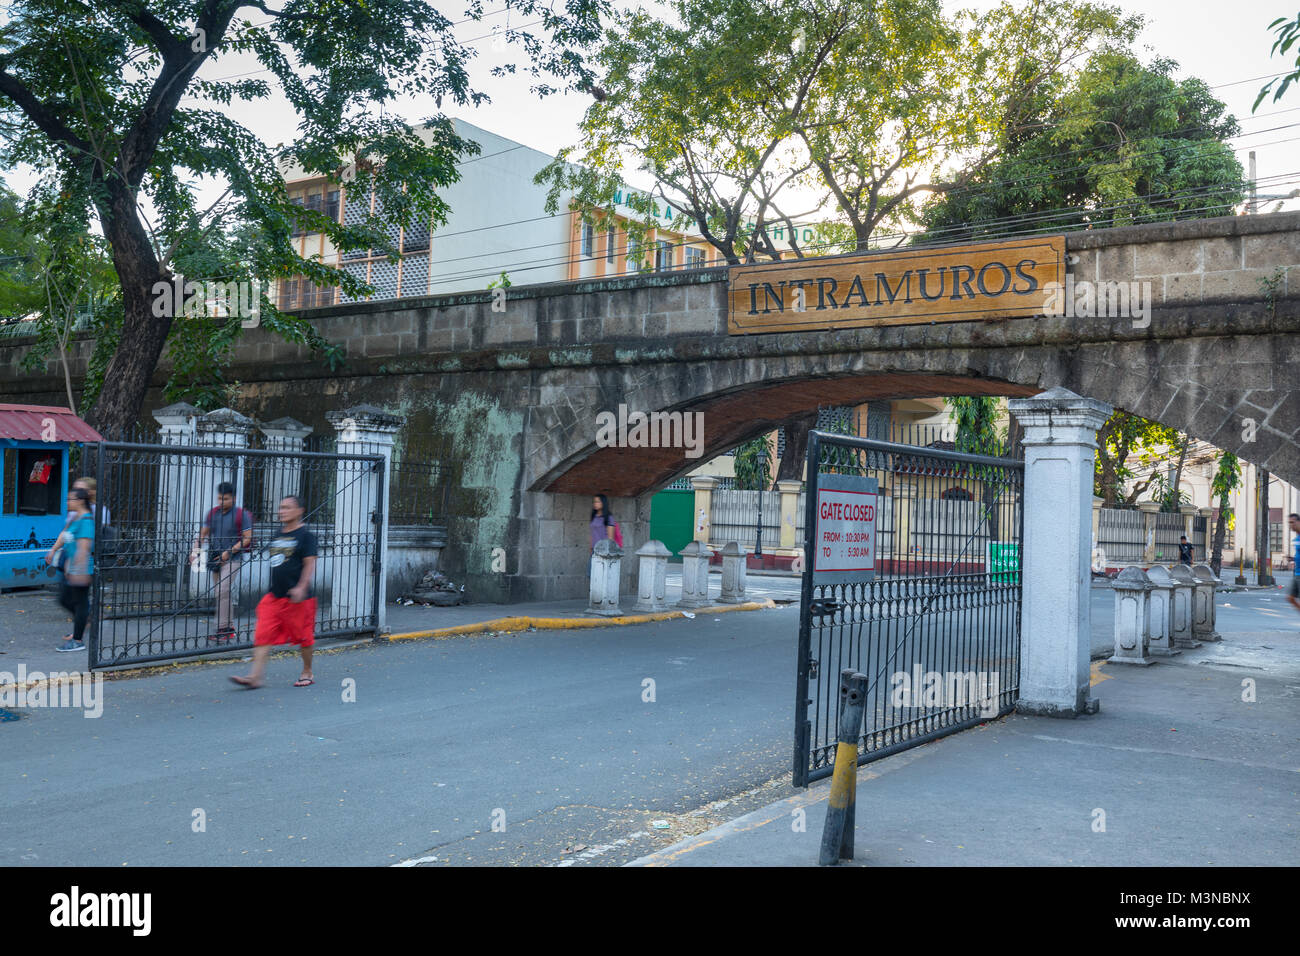 Manila, Philippinen - Feb 4, 2018: Intramuros Eingang Schild über die Ruinen der Wände Stockfoto